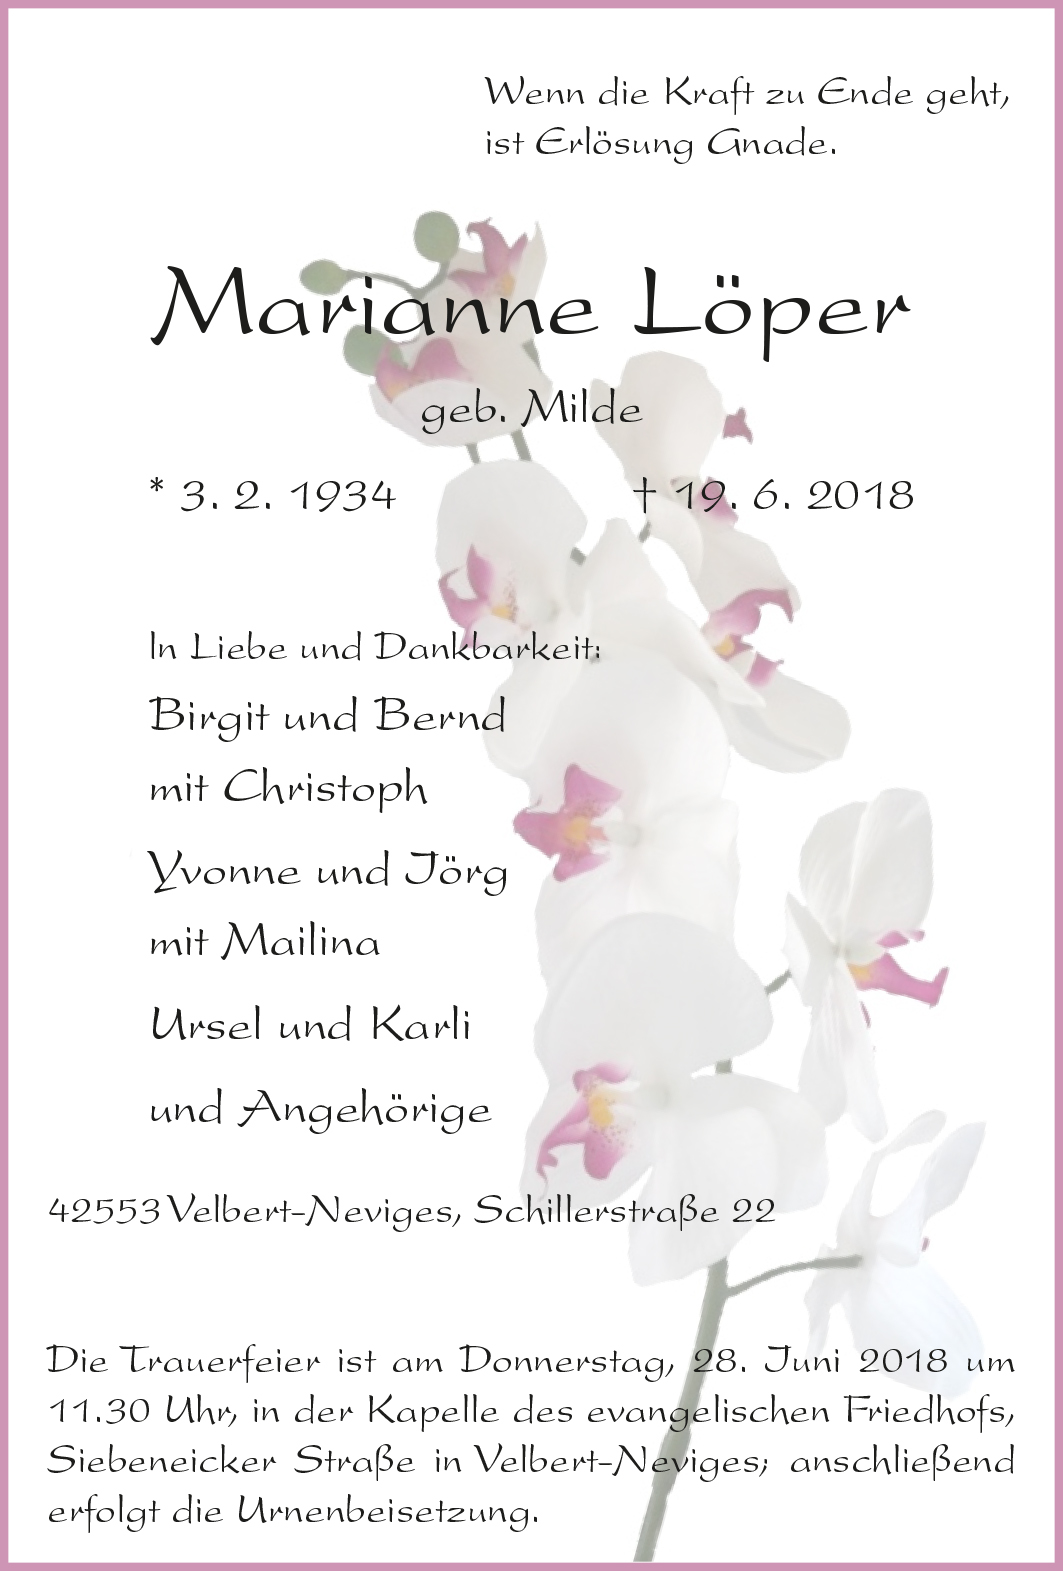 Marianne Löper